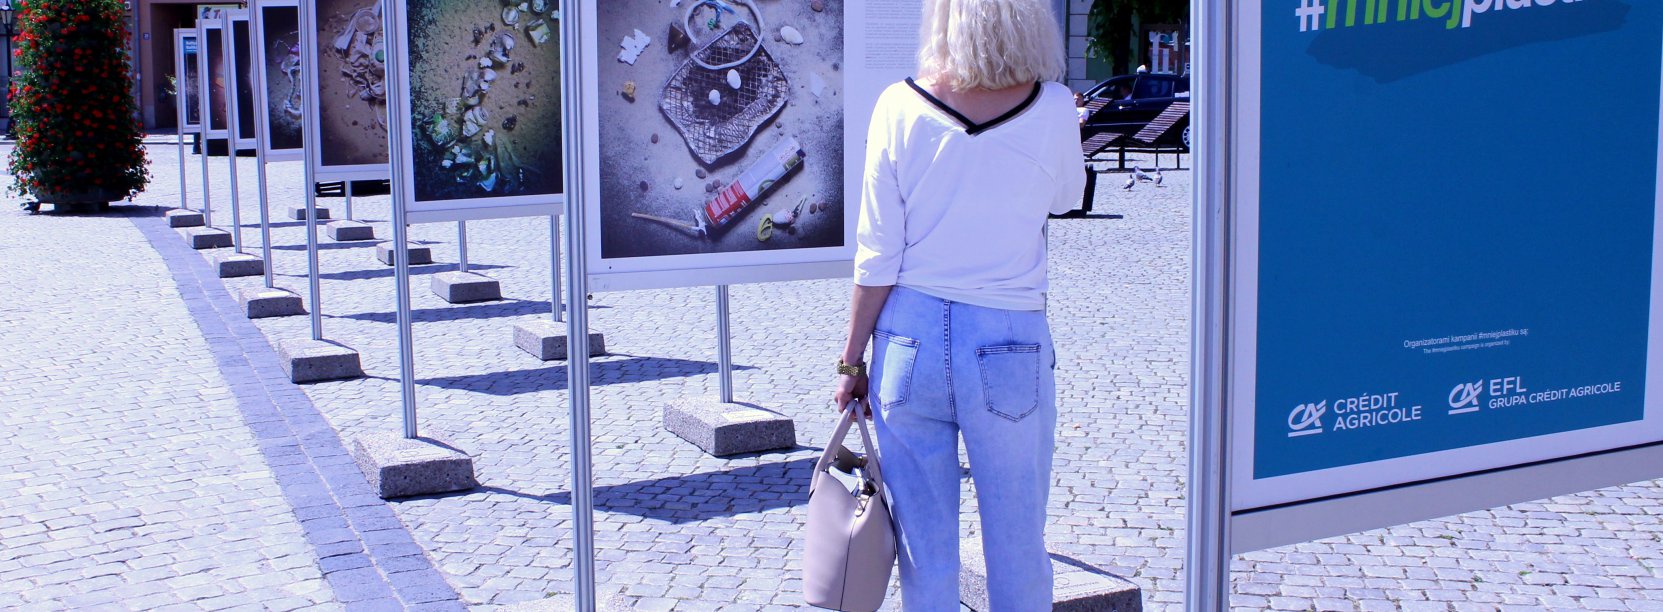 Kobieta w białej bluzce stojąca tyłem do obiektywu oglądająca wystawę